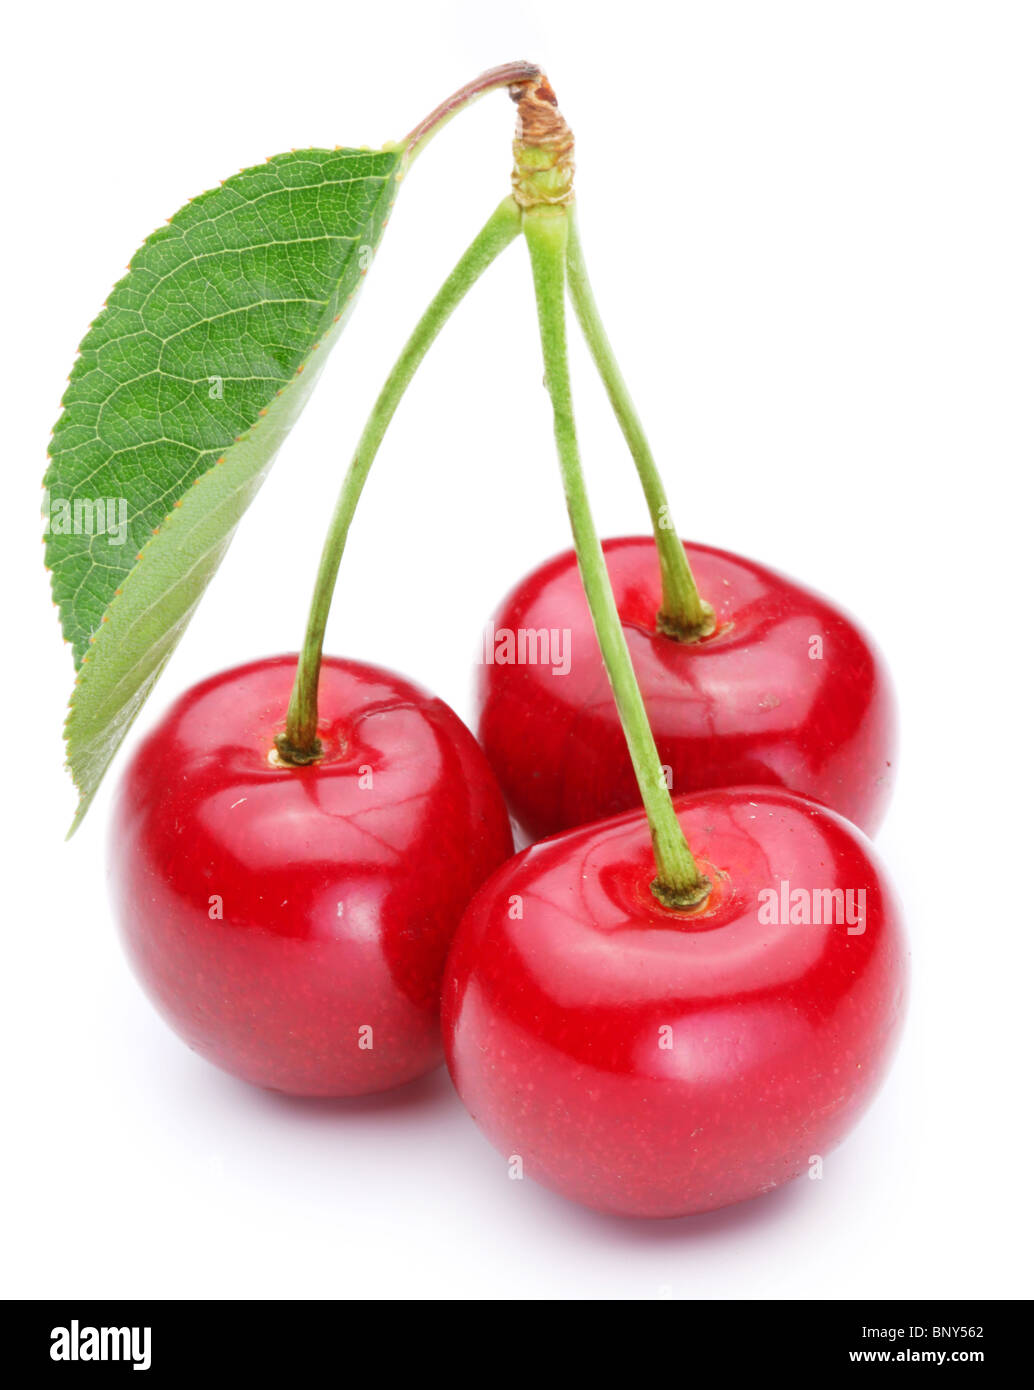 Three appetizing ripe cherries over white. Stock Photo